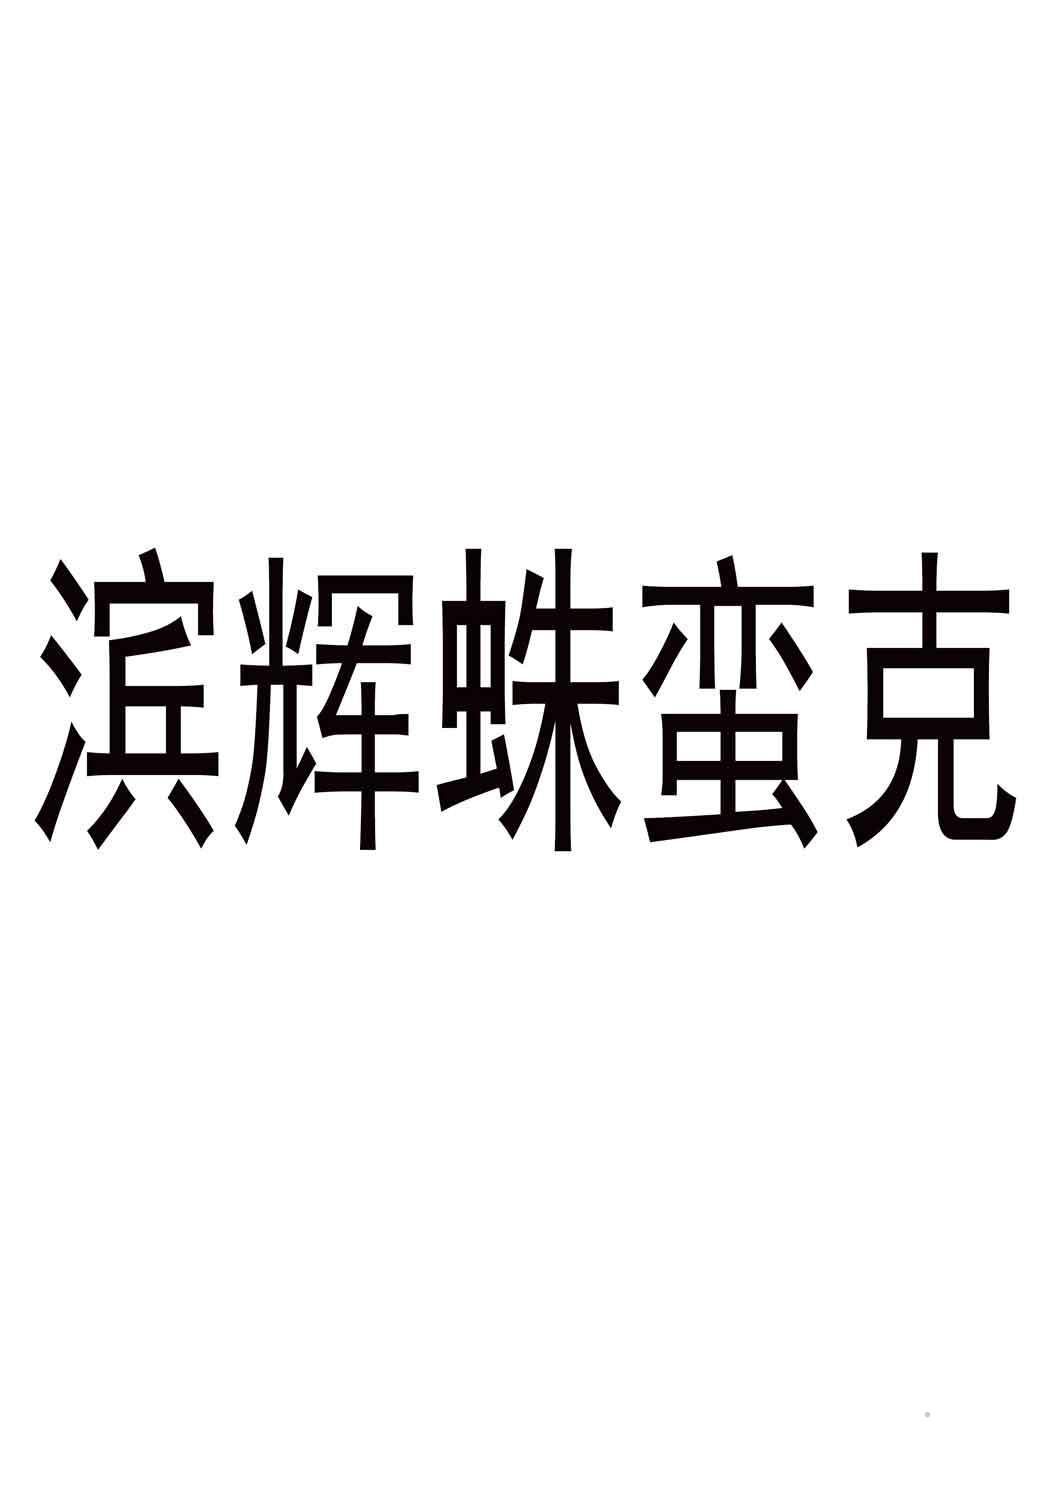 滨辉蛛蛮克logo